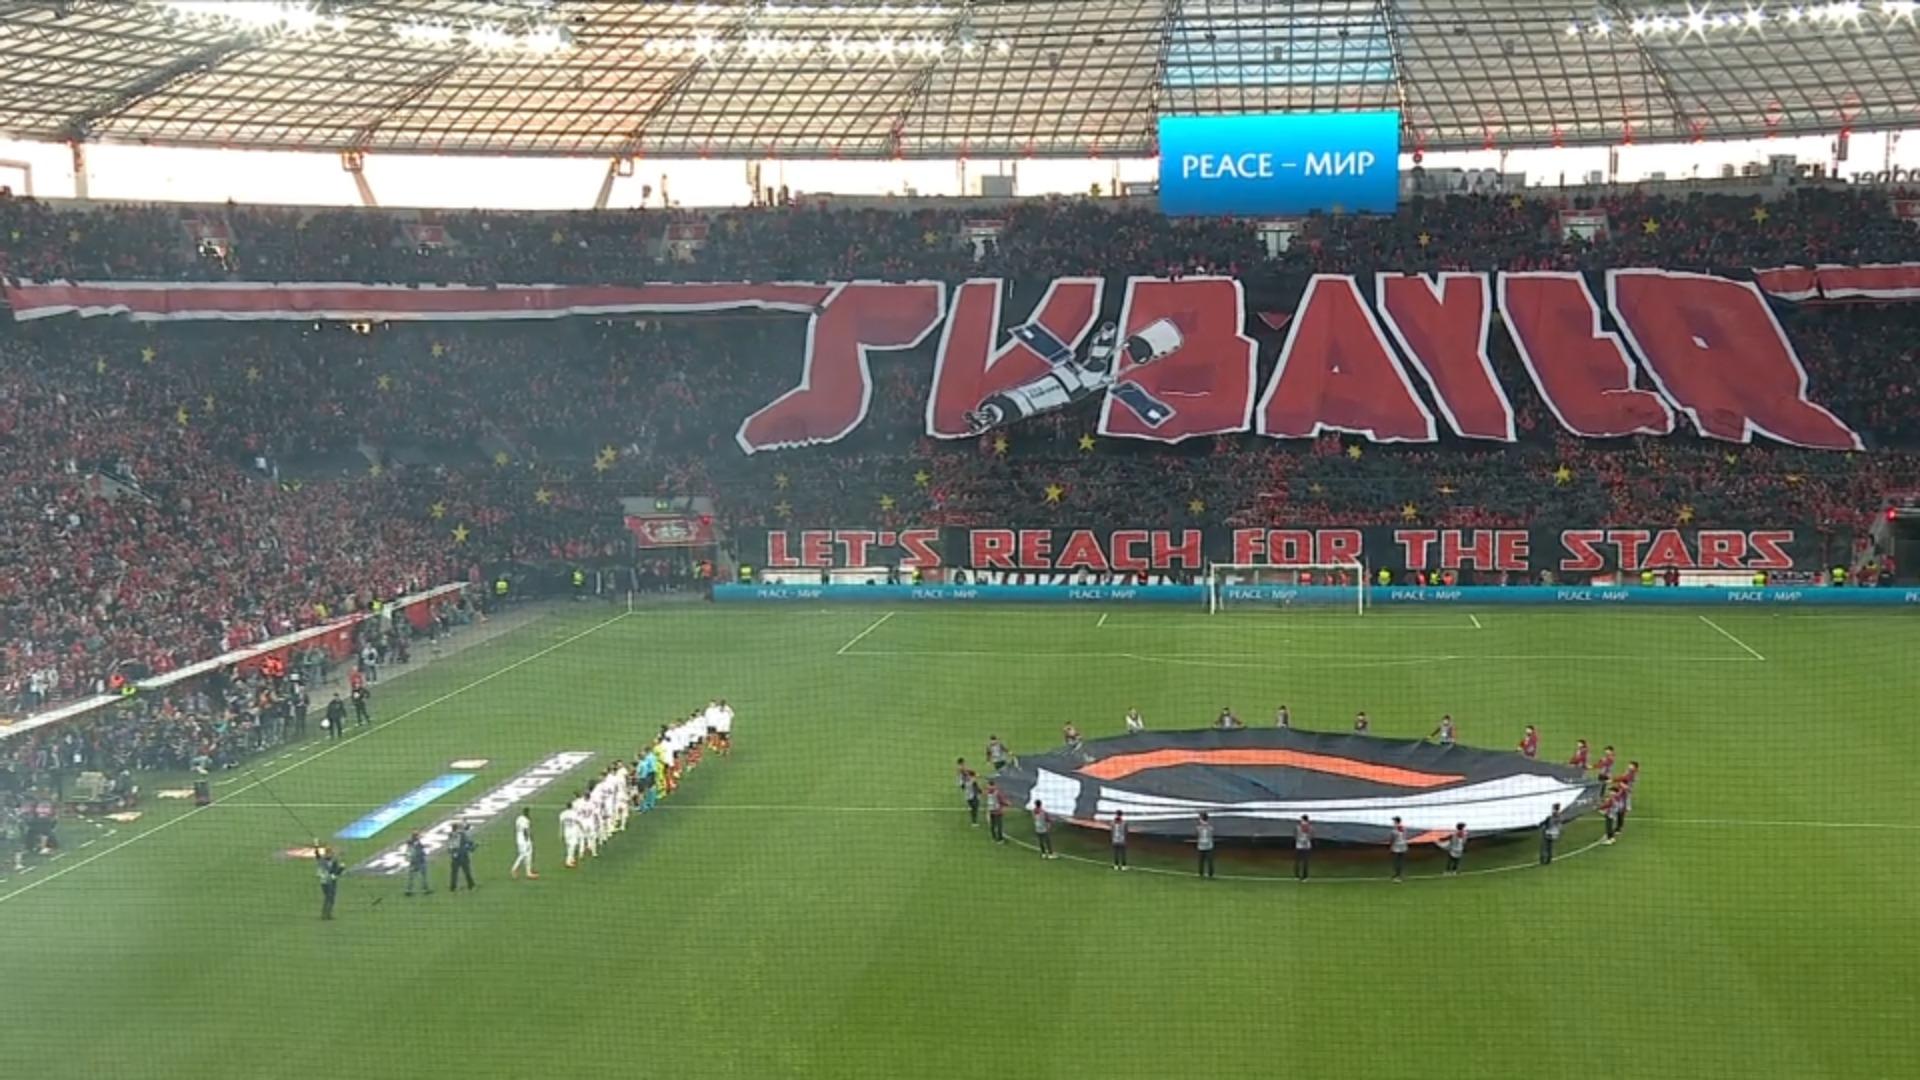 Leverkusen läuft mit Star-Wars-Musik ins Stadion ein Ist die Macht heute mit ihnen?